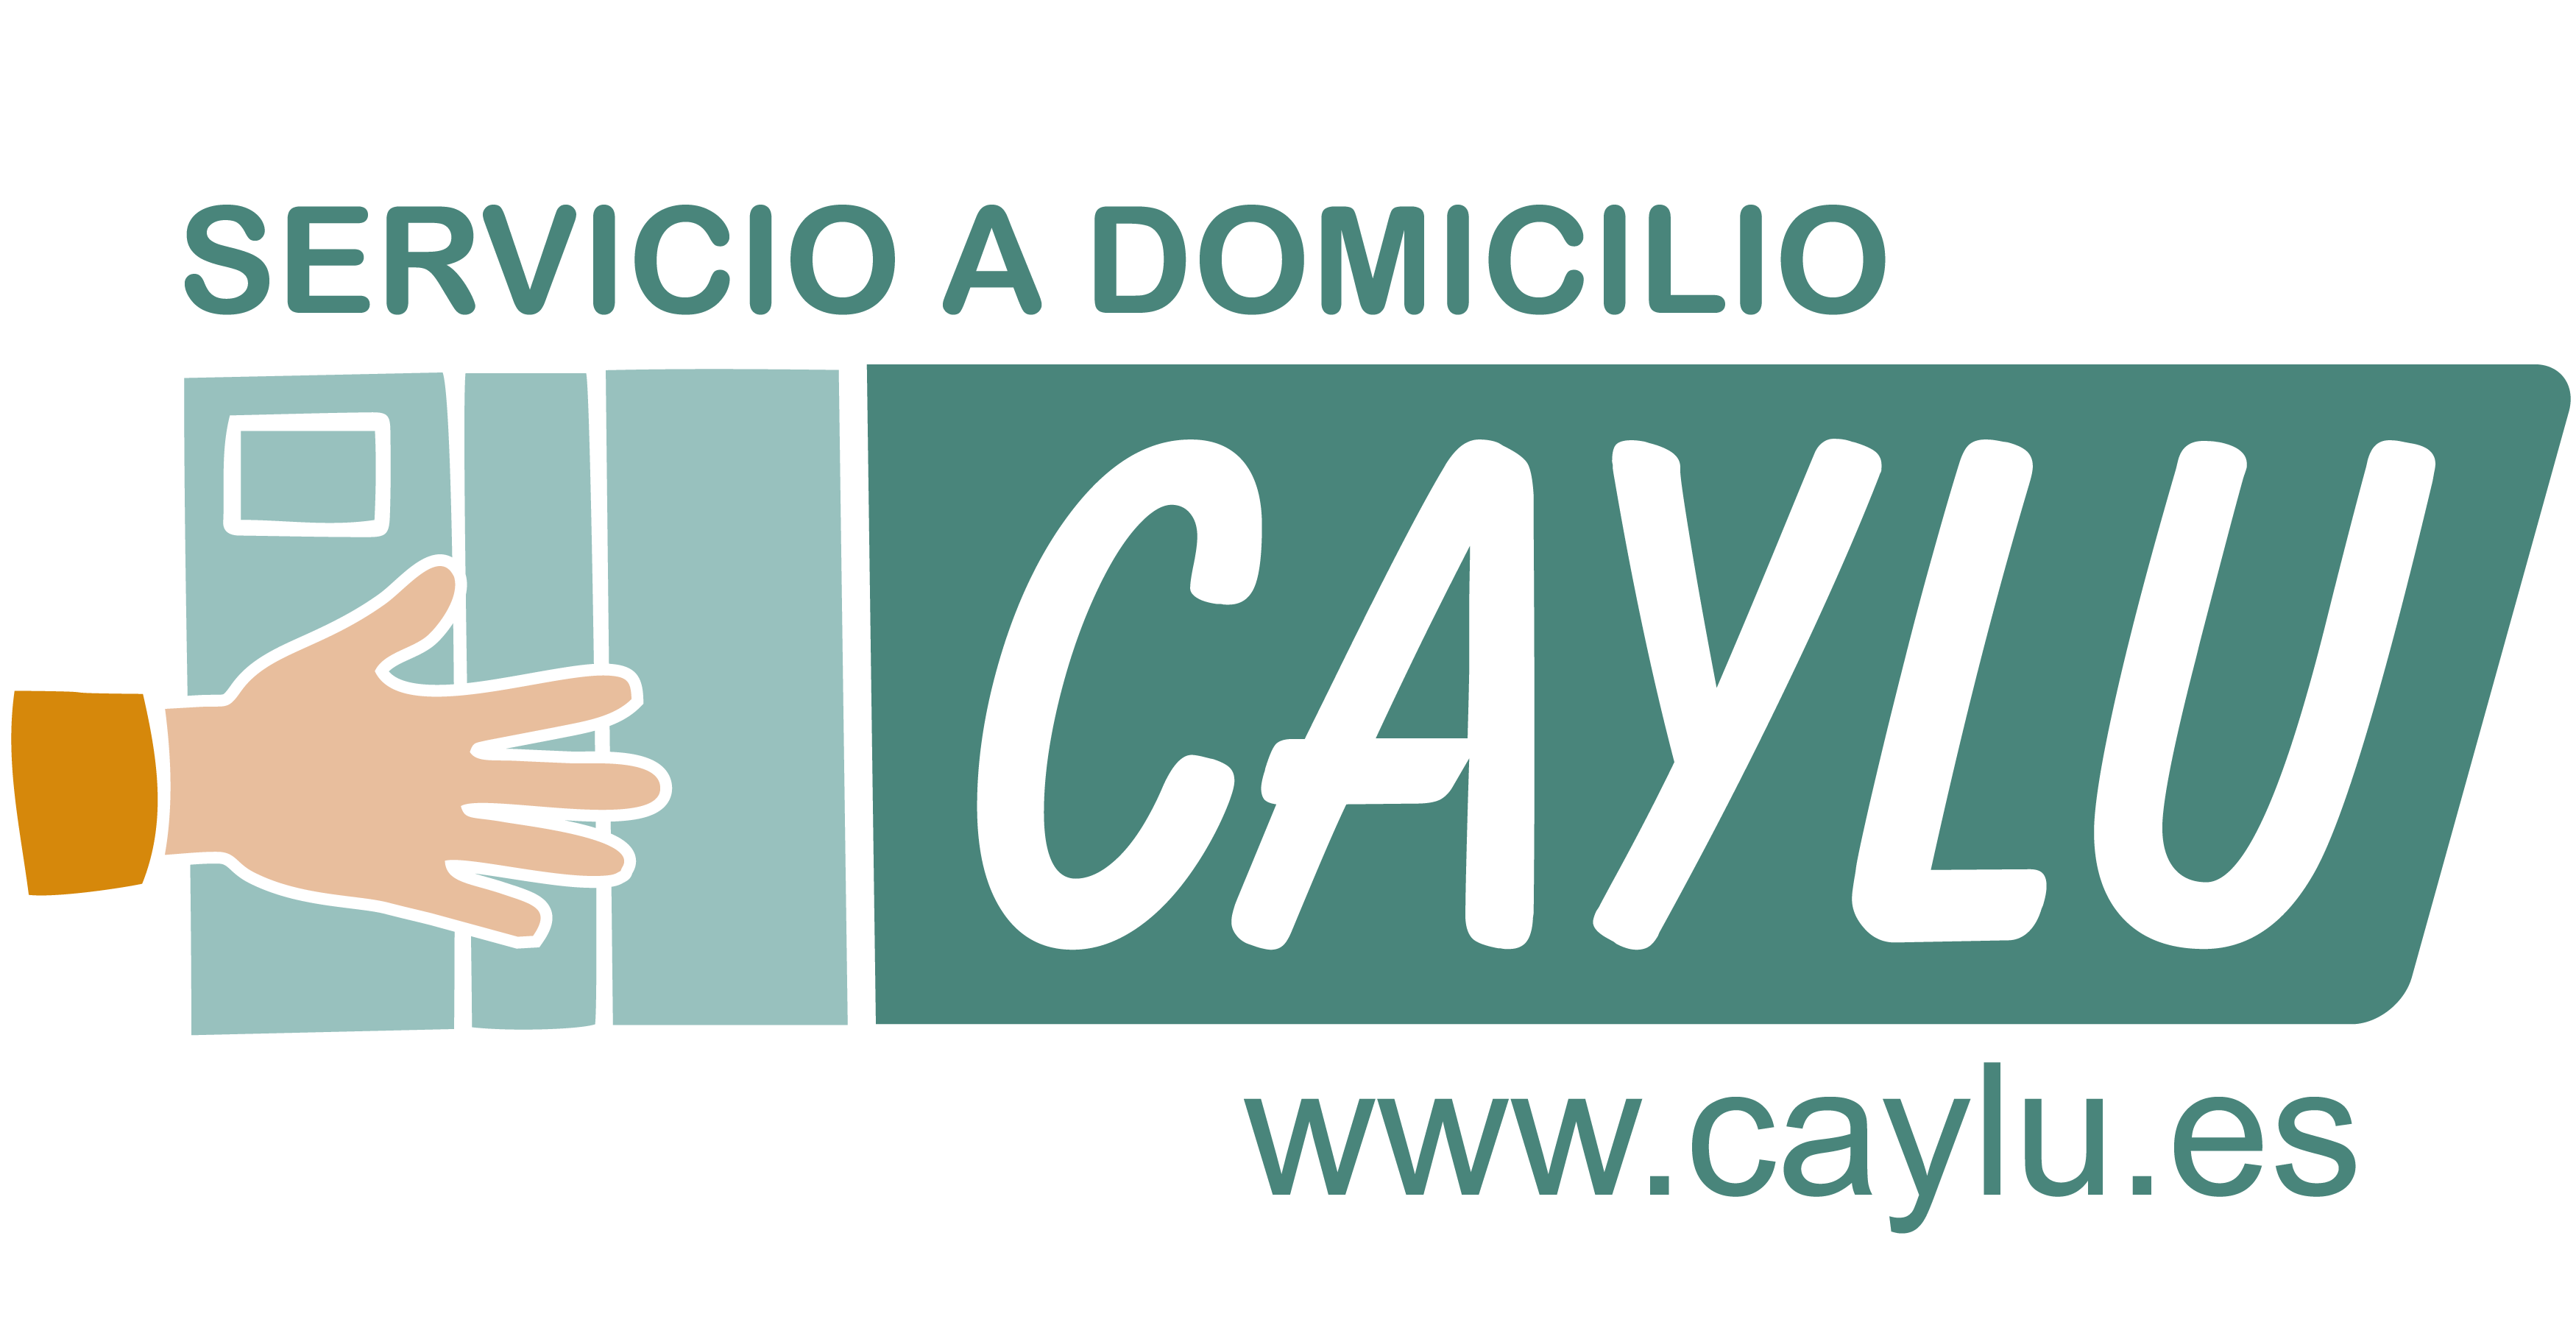 (c) Caylu.es